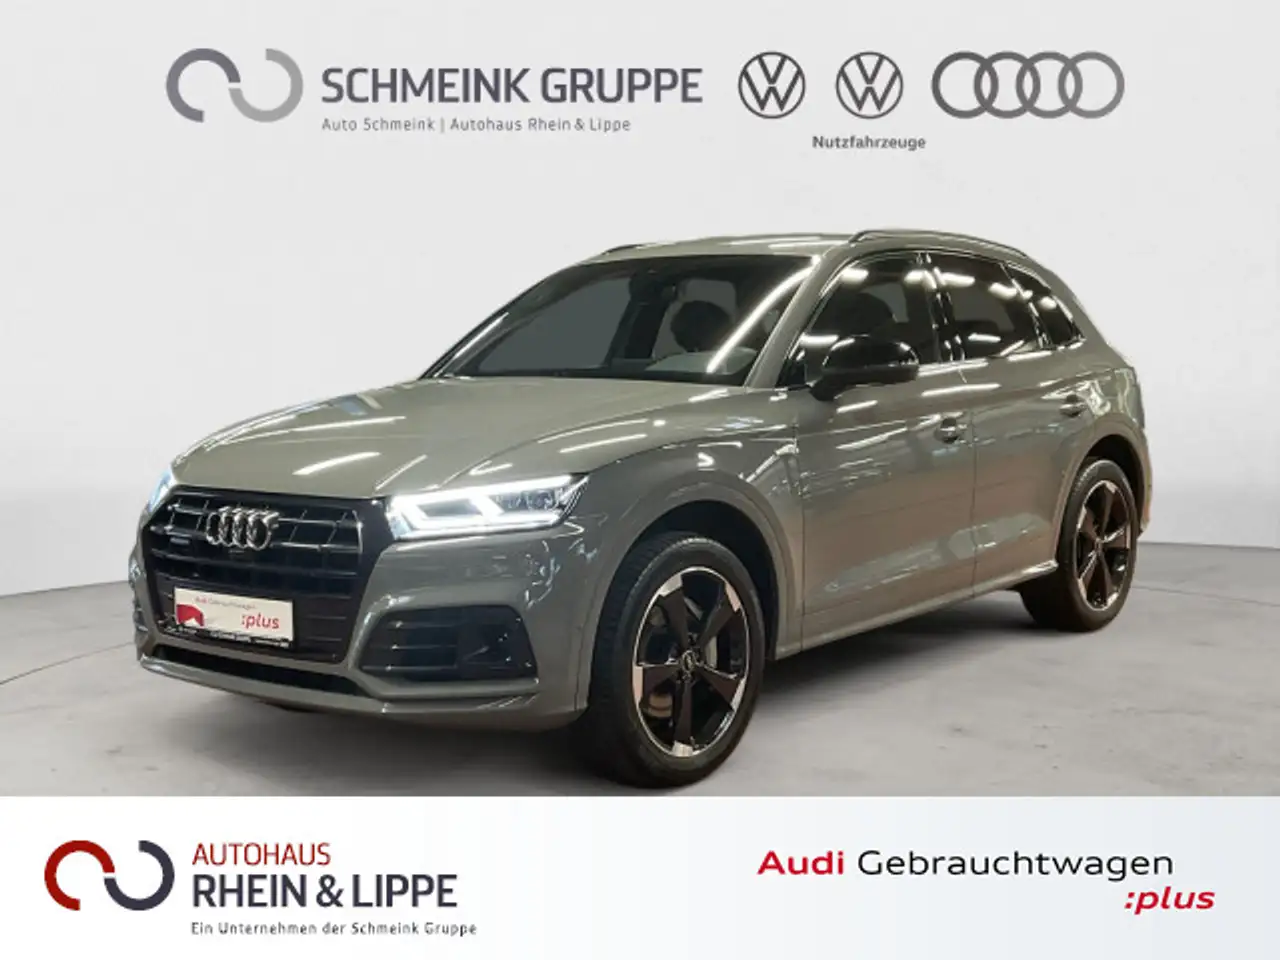 Audi Q5 SUV/4x4/Pick-up in Grijs tweedehands in Wesel voor € 39.580,-